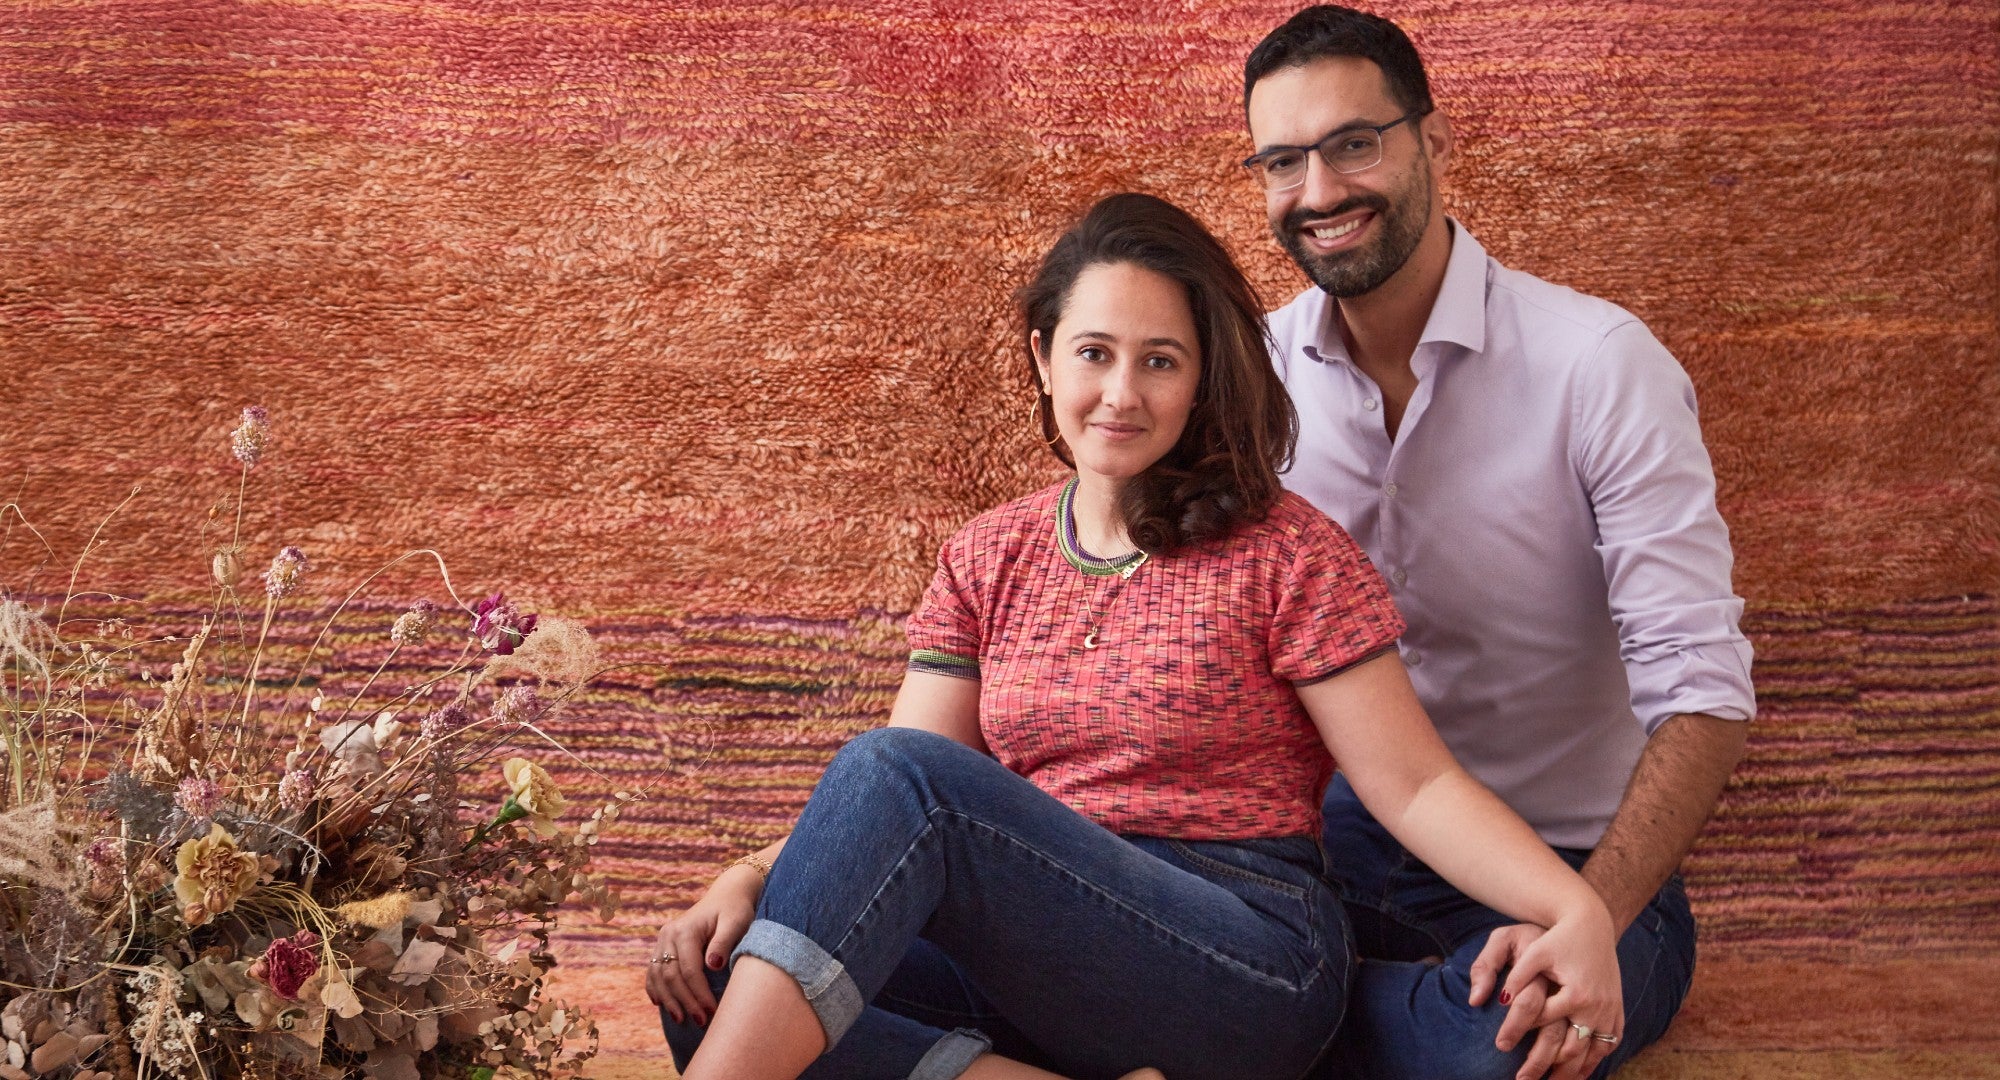 coppia sorridente seduti su un tappeto dai toni rossi e rosa che fa anche da sfondo. ai loro piedi è presente una decorazione floreale